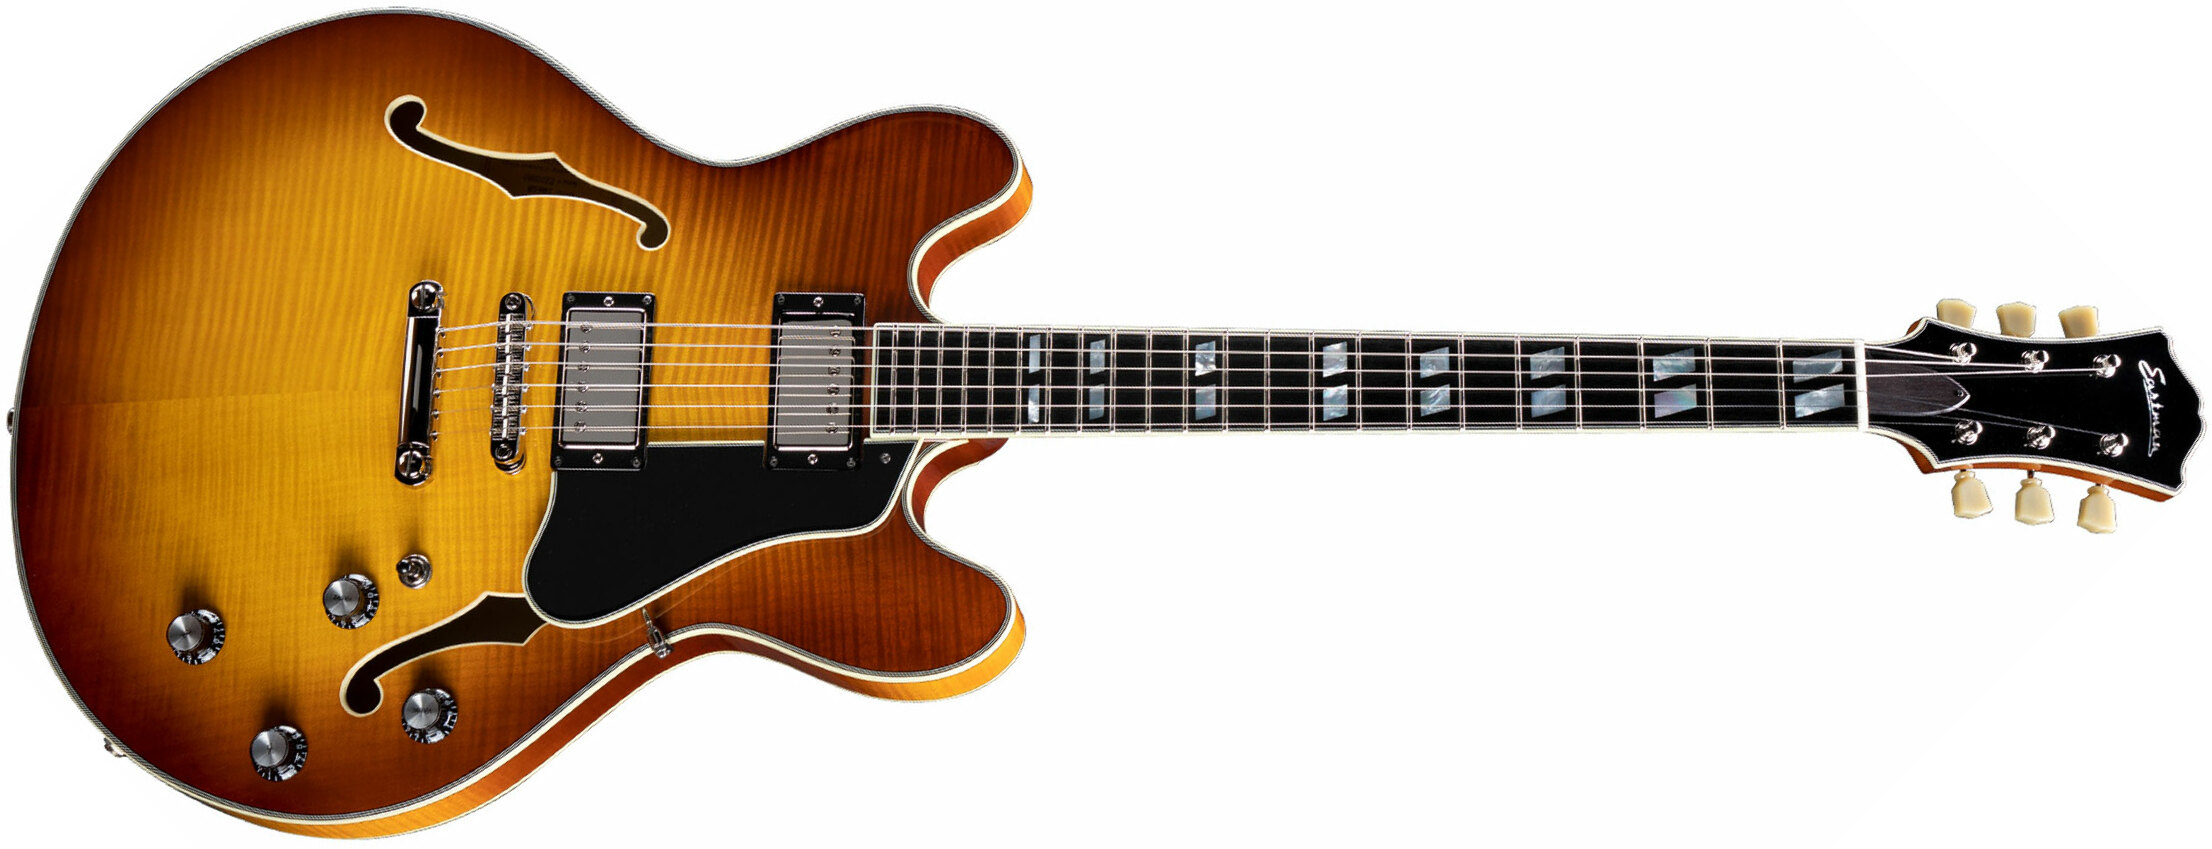 Eastman T486 Thinline Laminate Tout Erable Hh Seymour Duncan Ht Eb - Goldburst - Semi-hollow electric guitar - Main picture